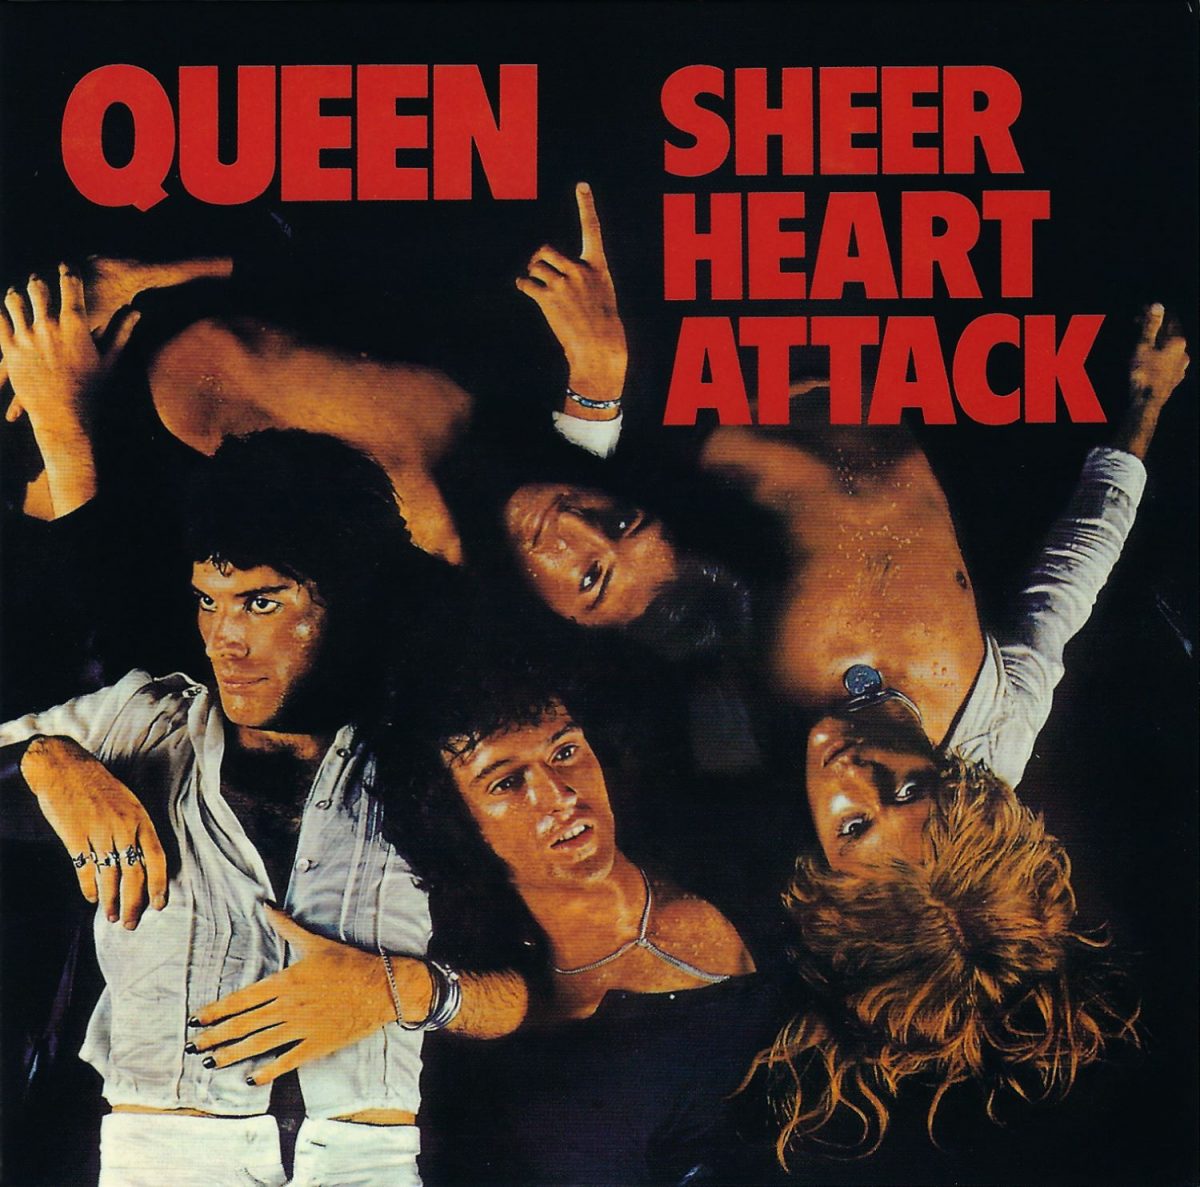 Queen, Sheer Heart Attaack, album cover, music, 1970s